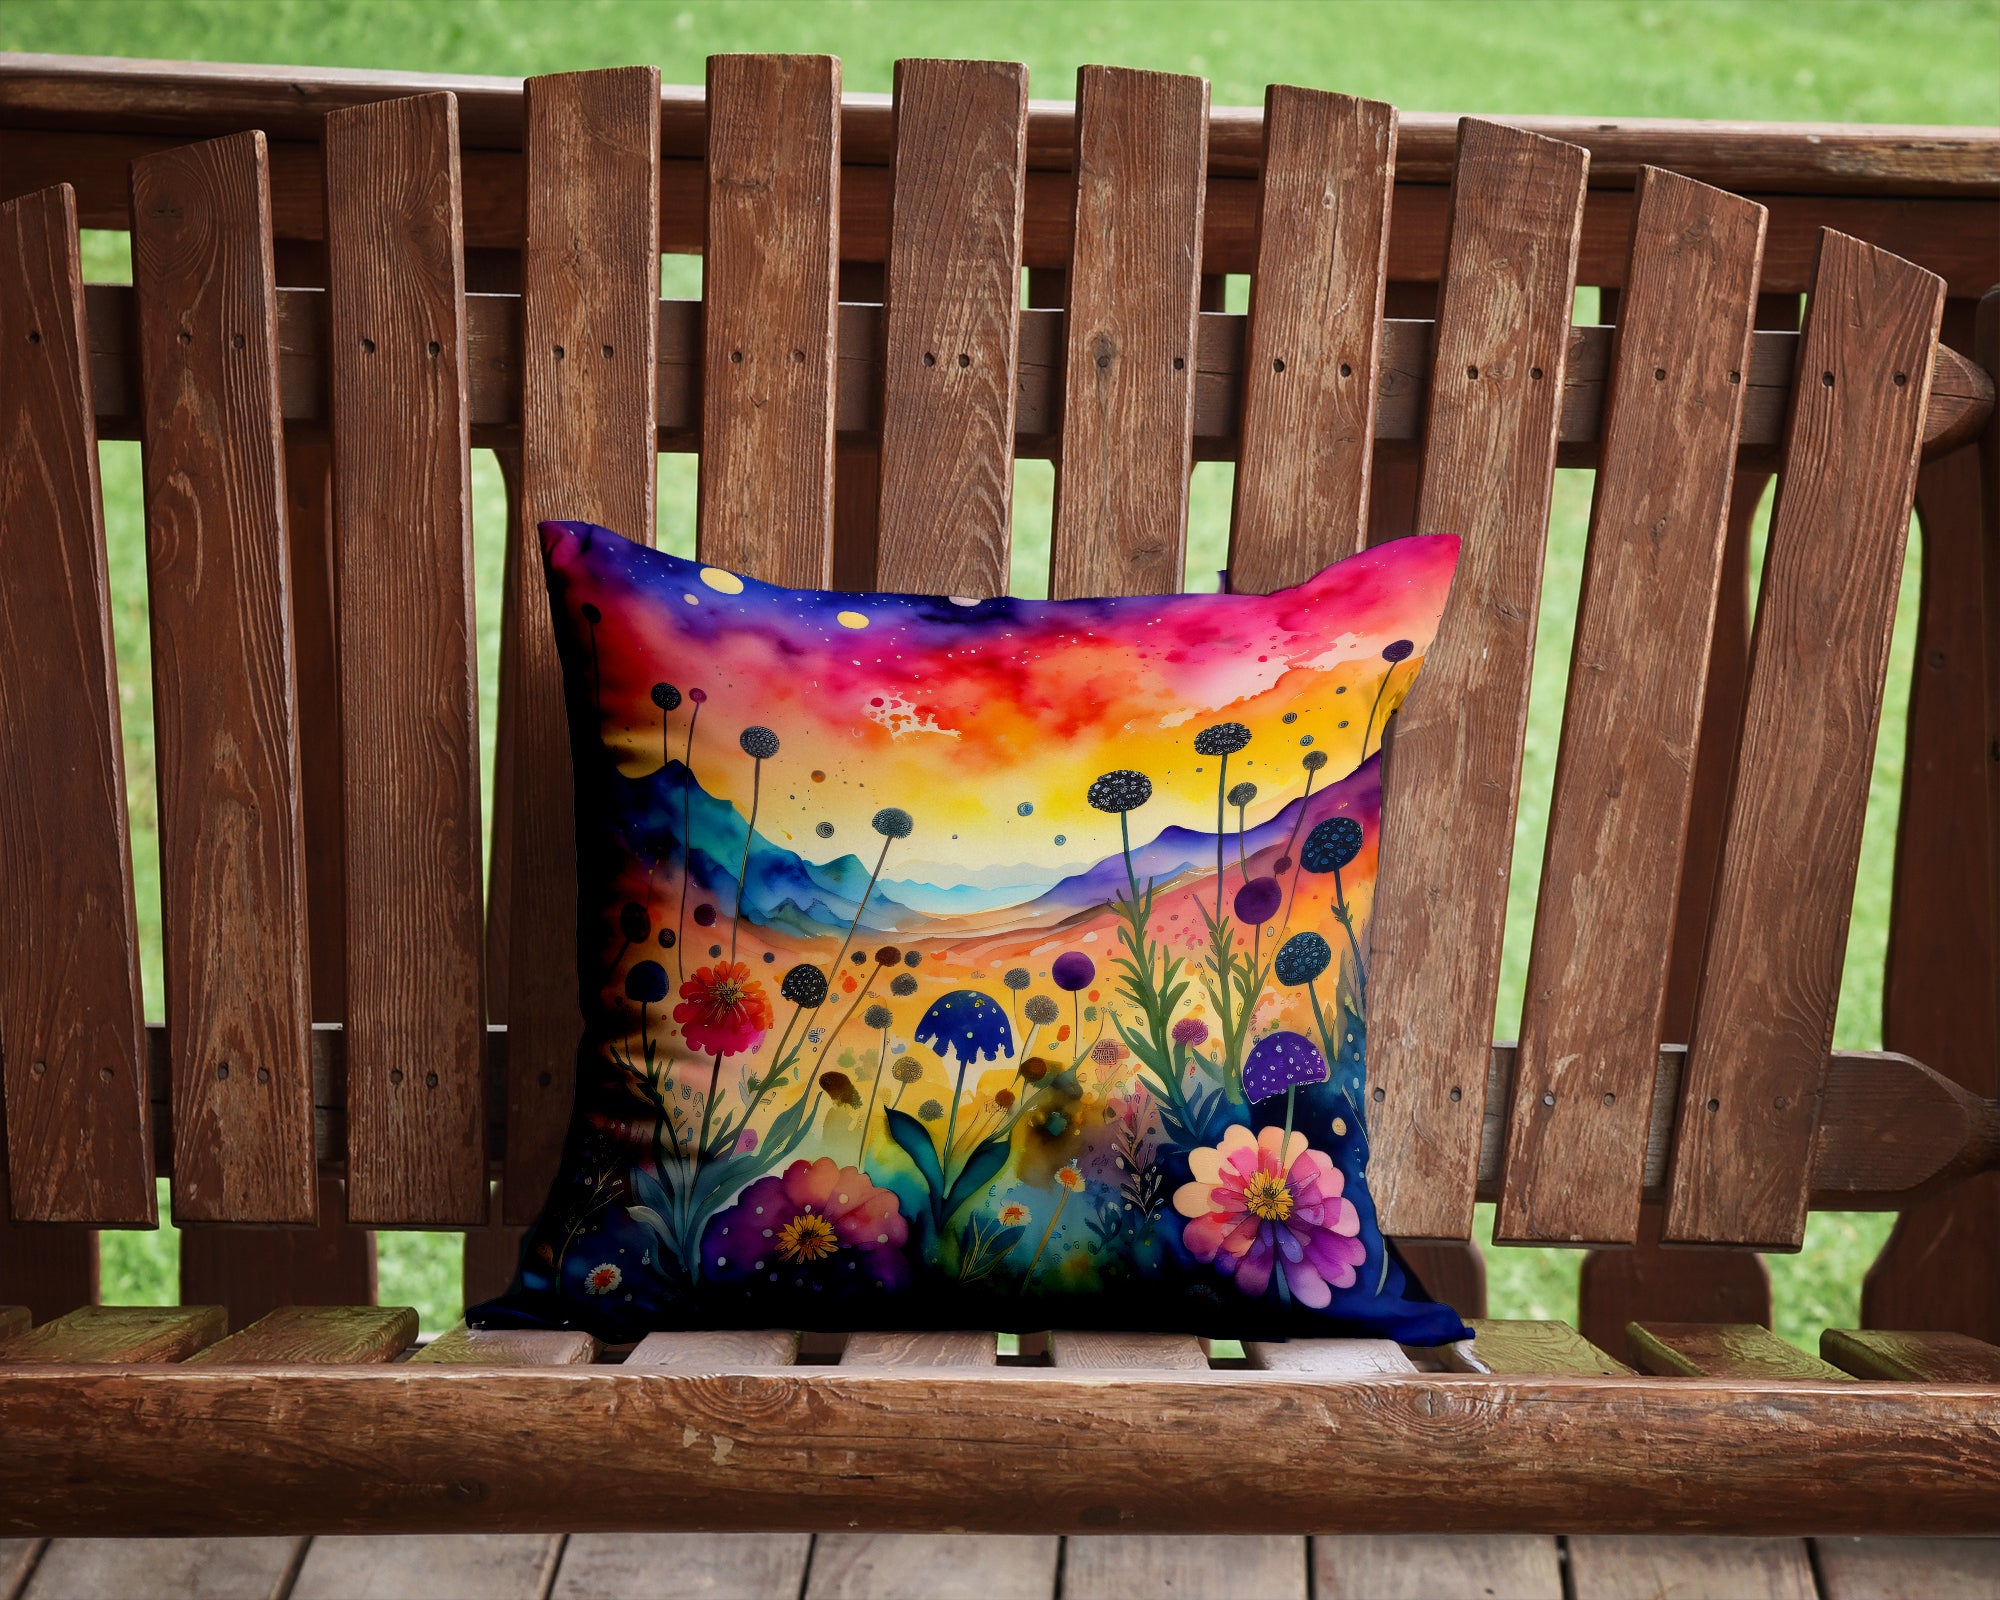 Colorful Scabiosa Fabric Decorative Pillow